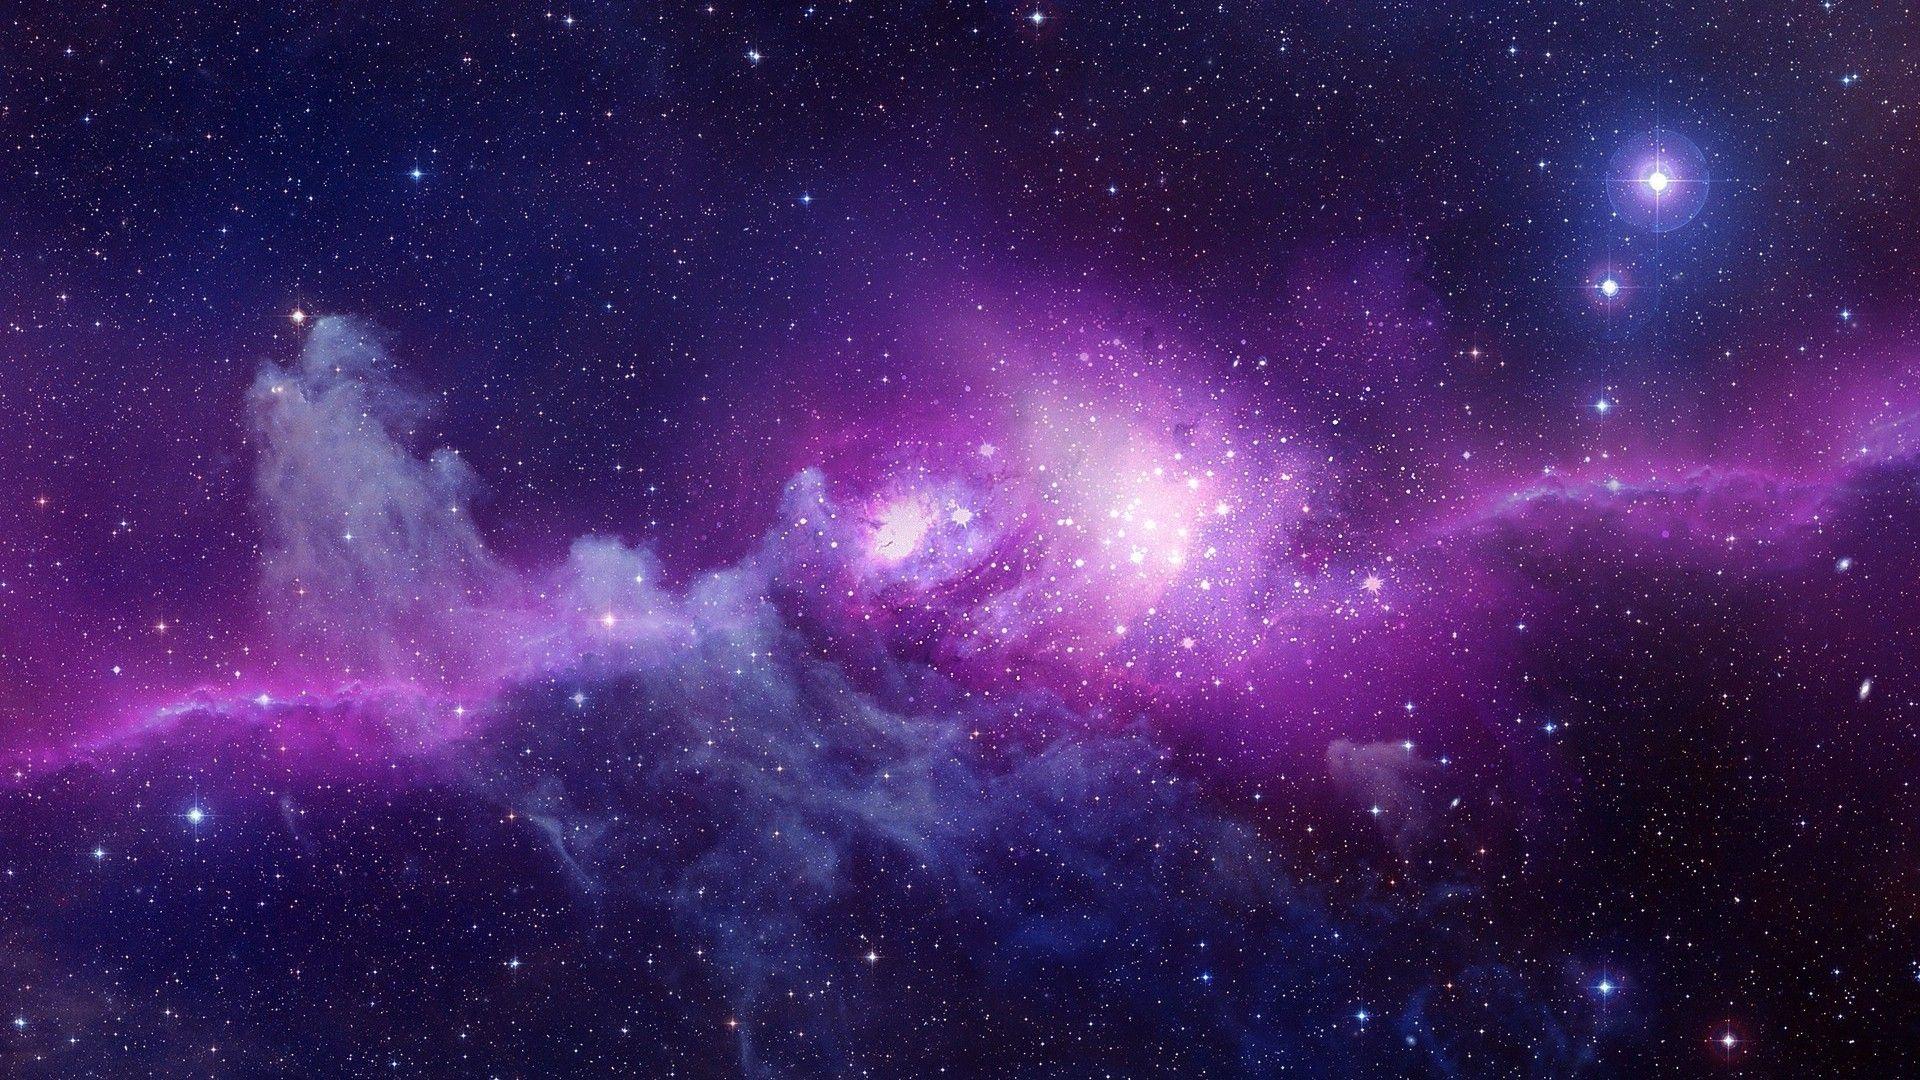 WallpaperDog cung cấp cho bạn hàng ngàn Purple Galaxy Wallpapers với chất lượng cao và độ phân giải tuyệt đỉnh. Hãy truy cập ngay vào trang web này để tìm kiếm những bức hình nền đẹp mắt và phù hợp với sở thích của bạn.